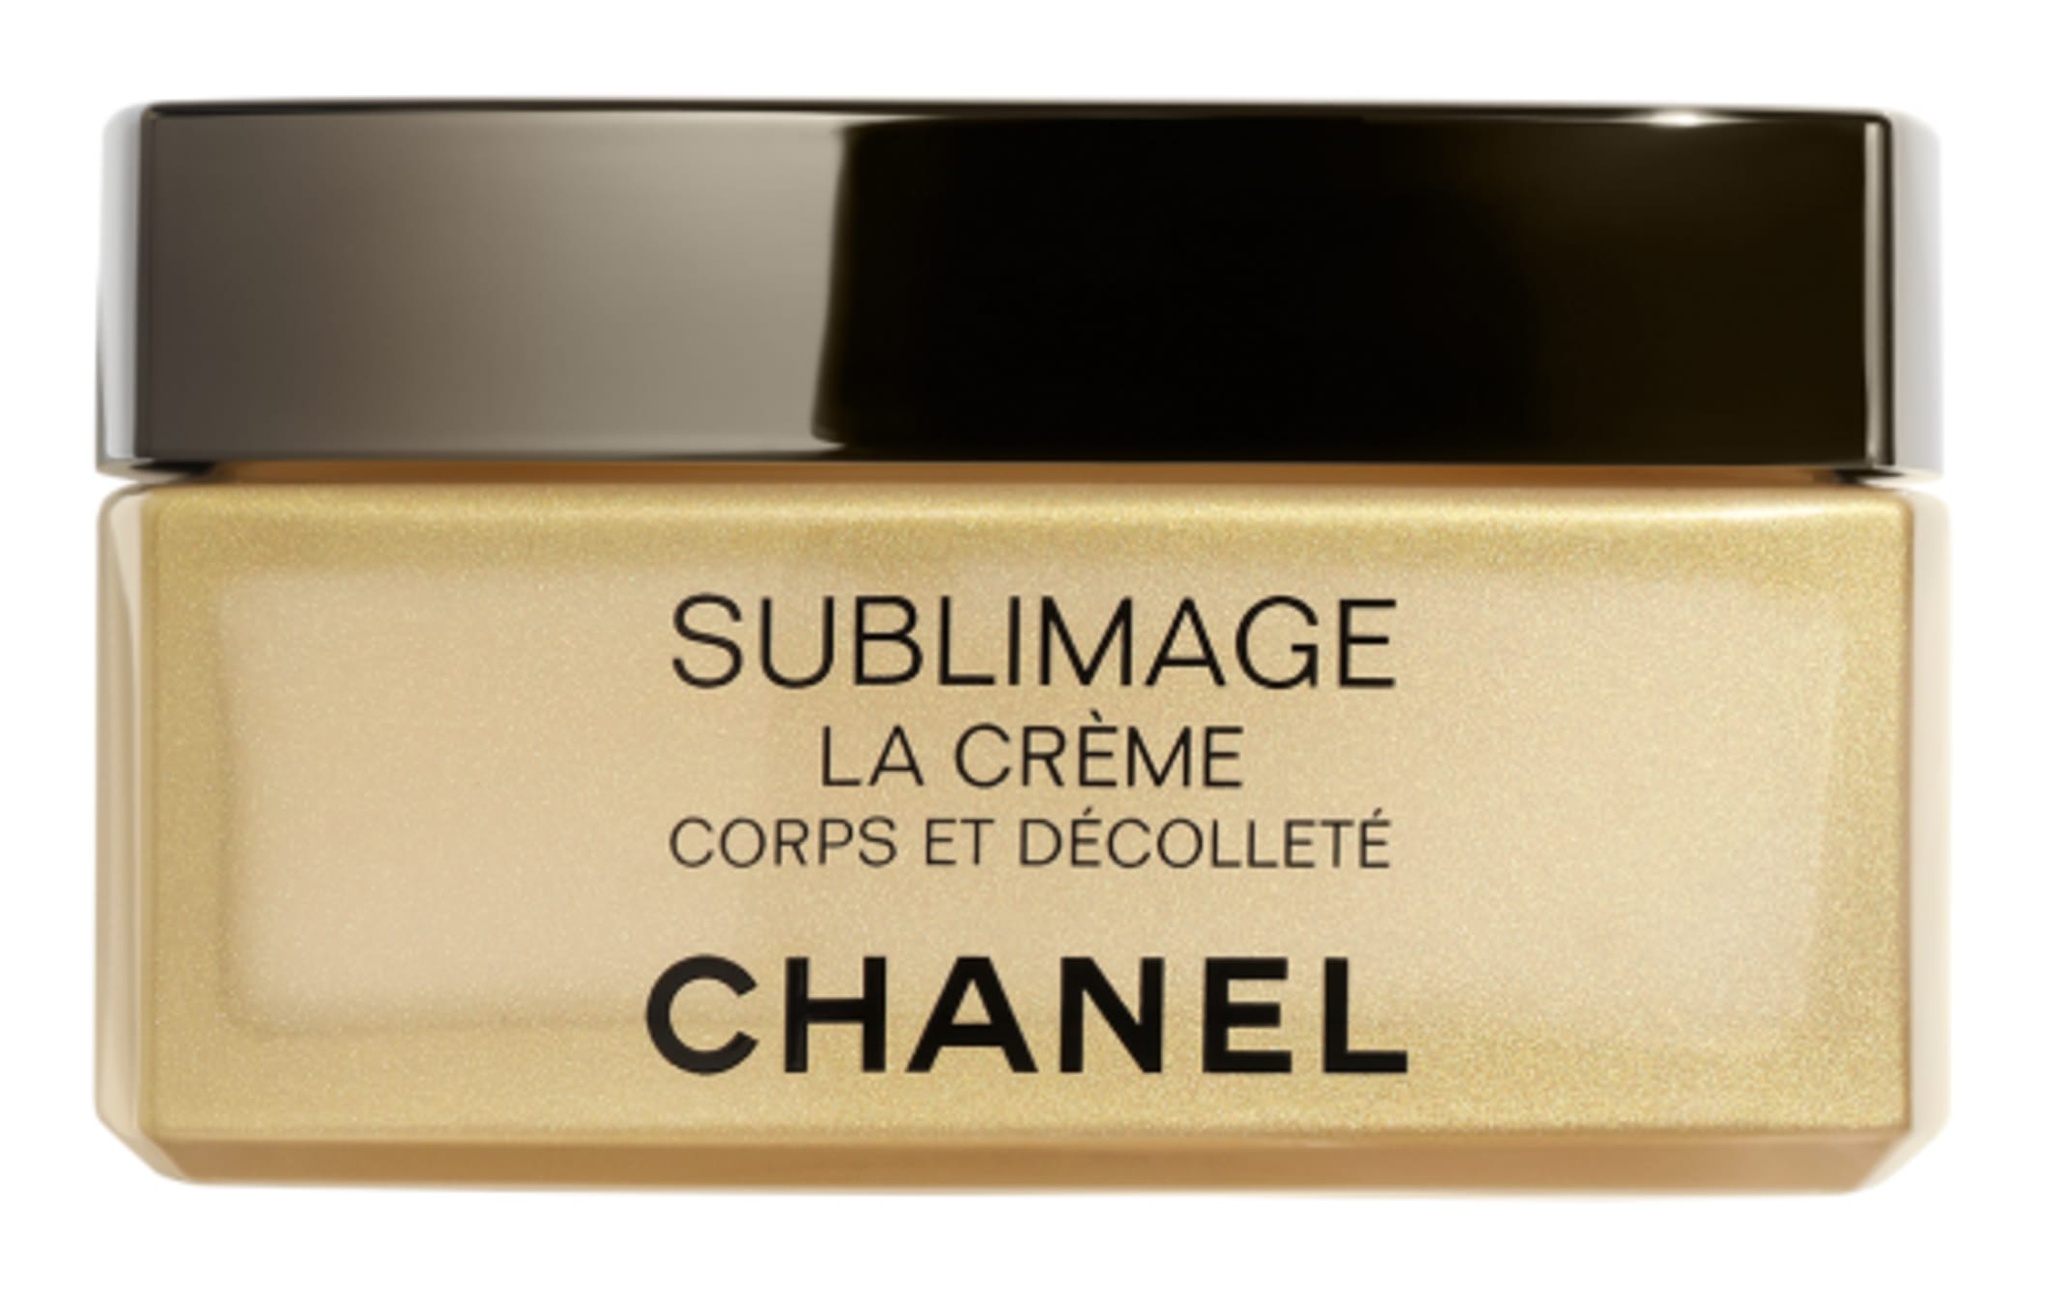 Chanel Sublimage La Crème Corps Et Décolleté The Regenerating Radiance Fresh Body Cream